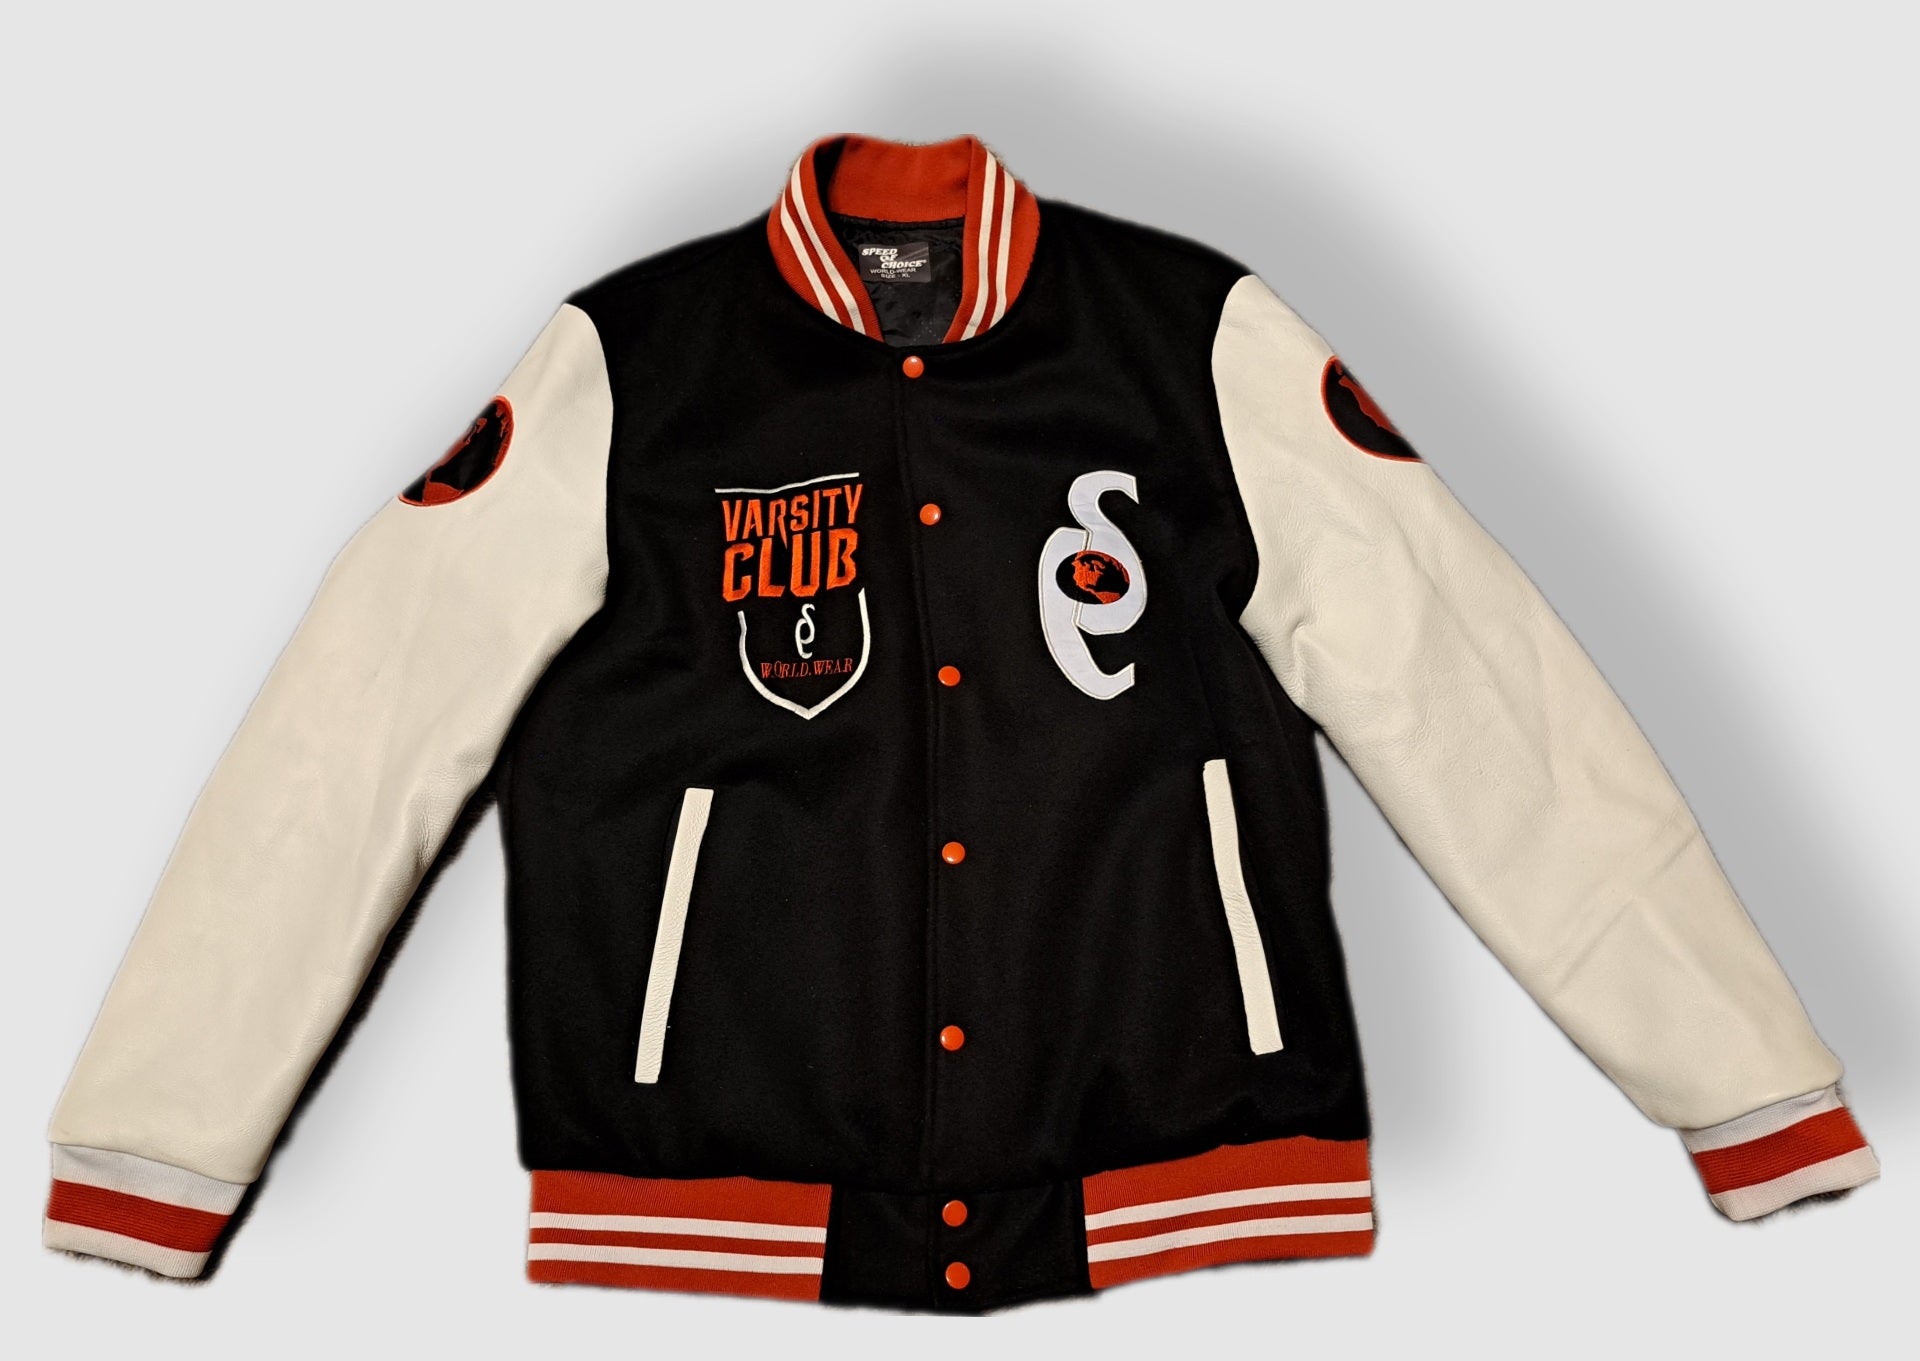 Varsity Club Black/White/Red Lettermen's Varsity Jacket - SPEED OF CHOICE® 